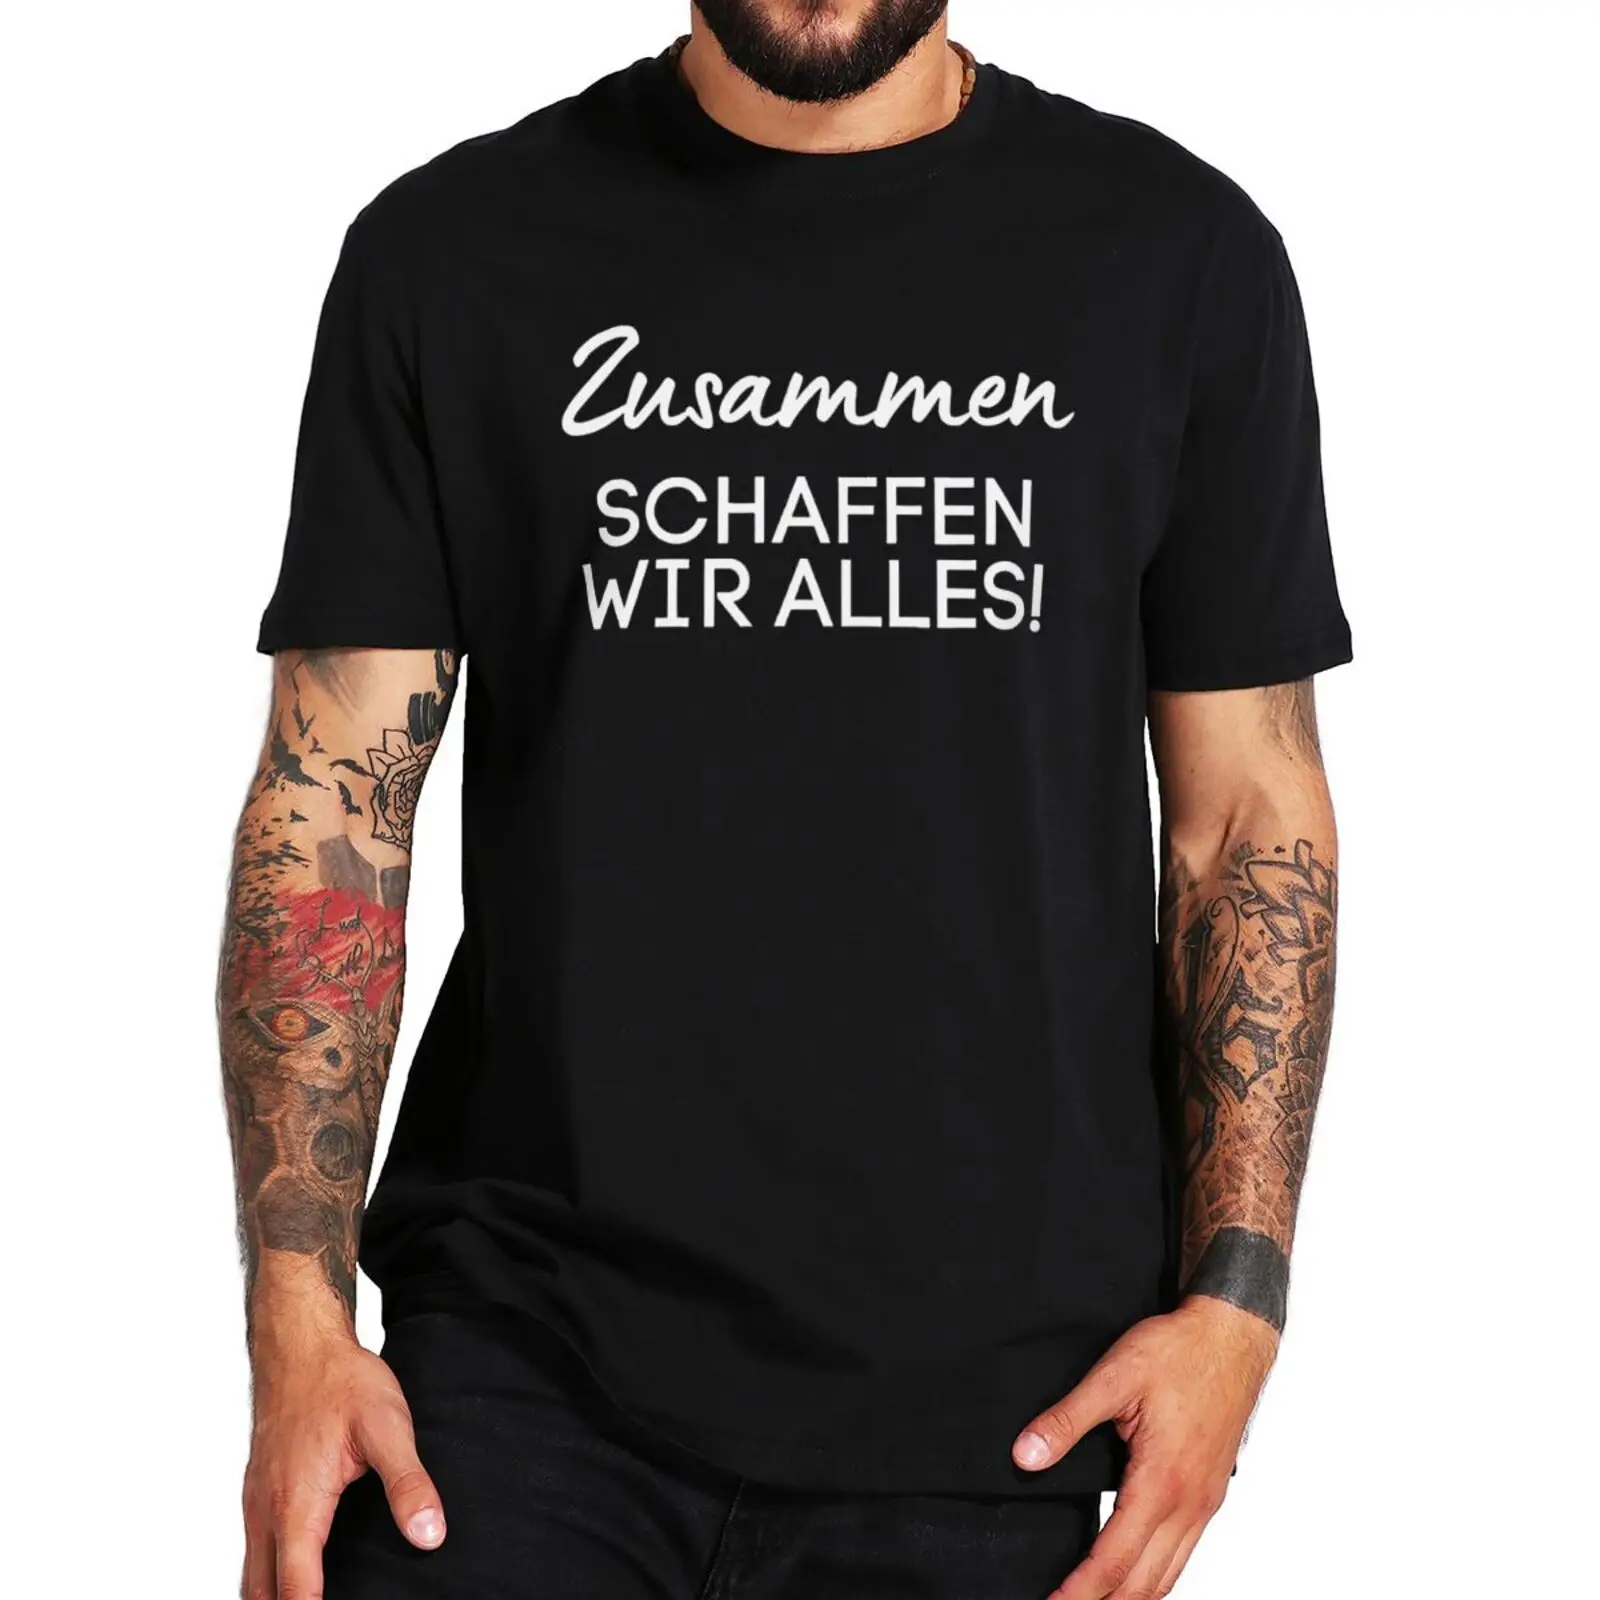 

Партнеры вместе мы можем сделать что-то, но оставайтесь трезвой футболка смешные питьевые шутки немецкий текст футболка летние хлопковые п...